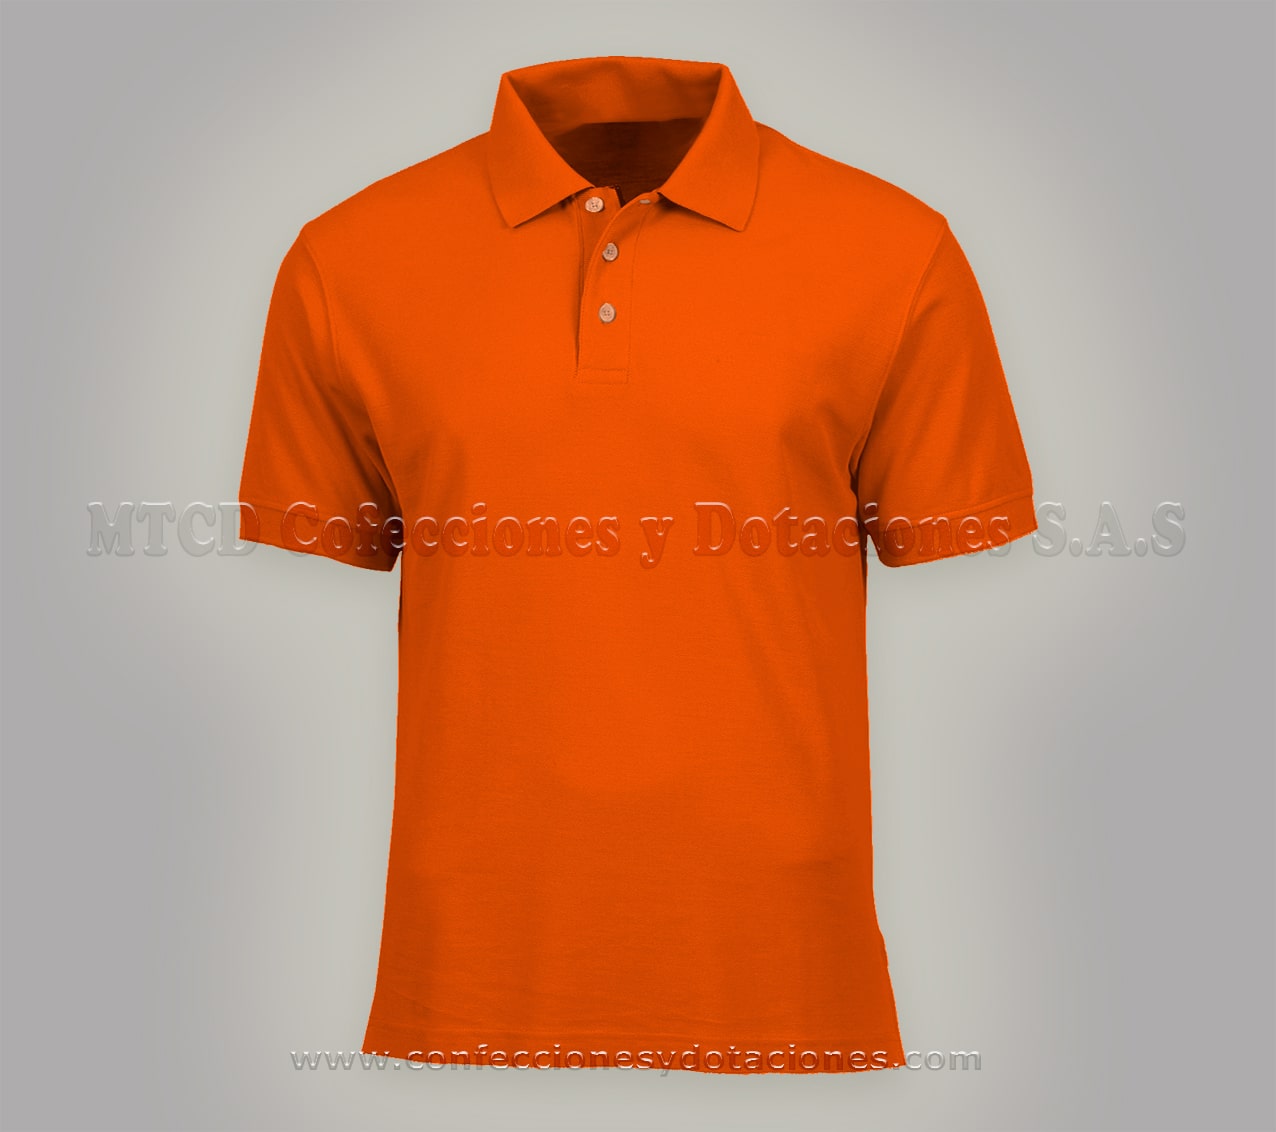 Camisas Polo Personalizadas | MTCD Confecciones y Dotaciones CHAQUETAS